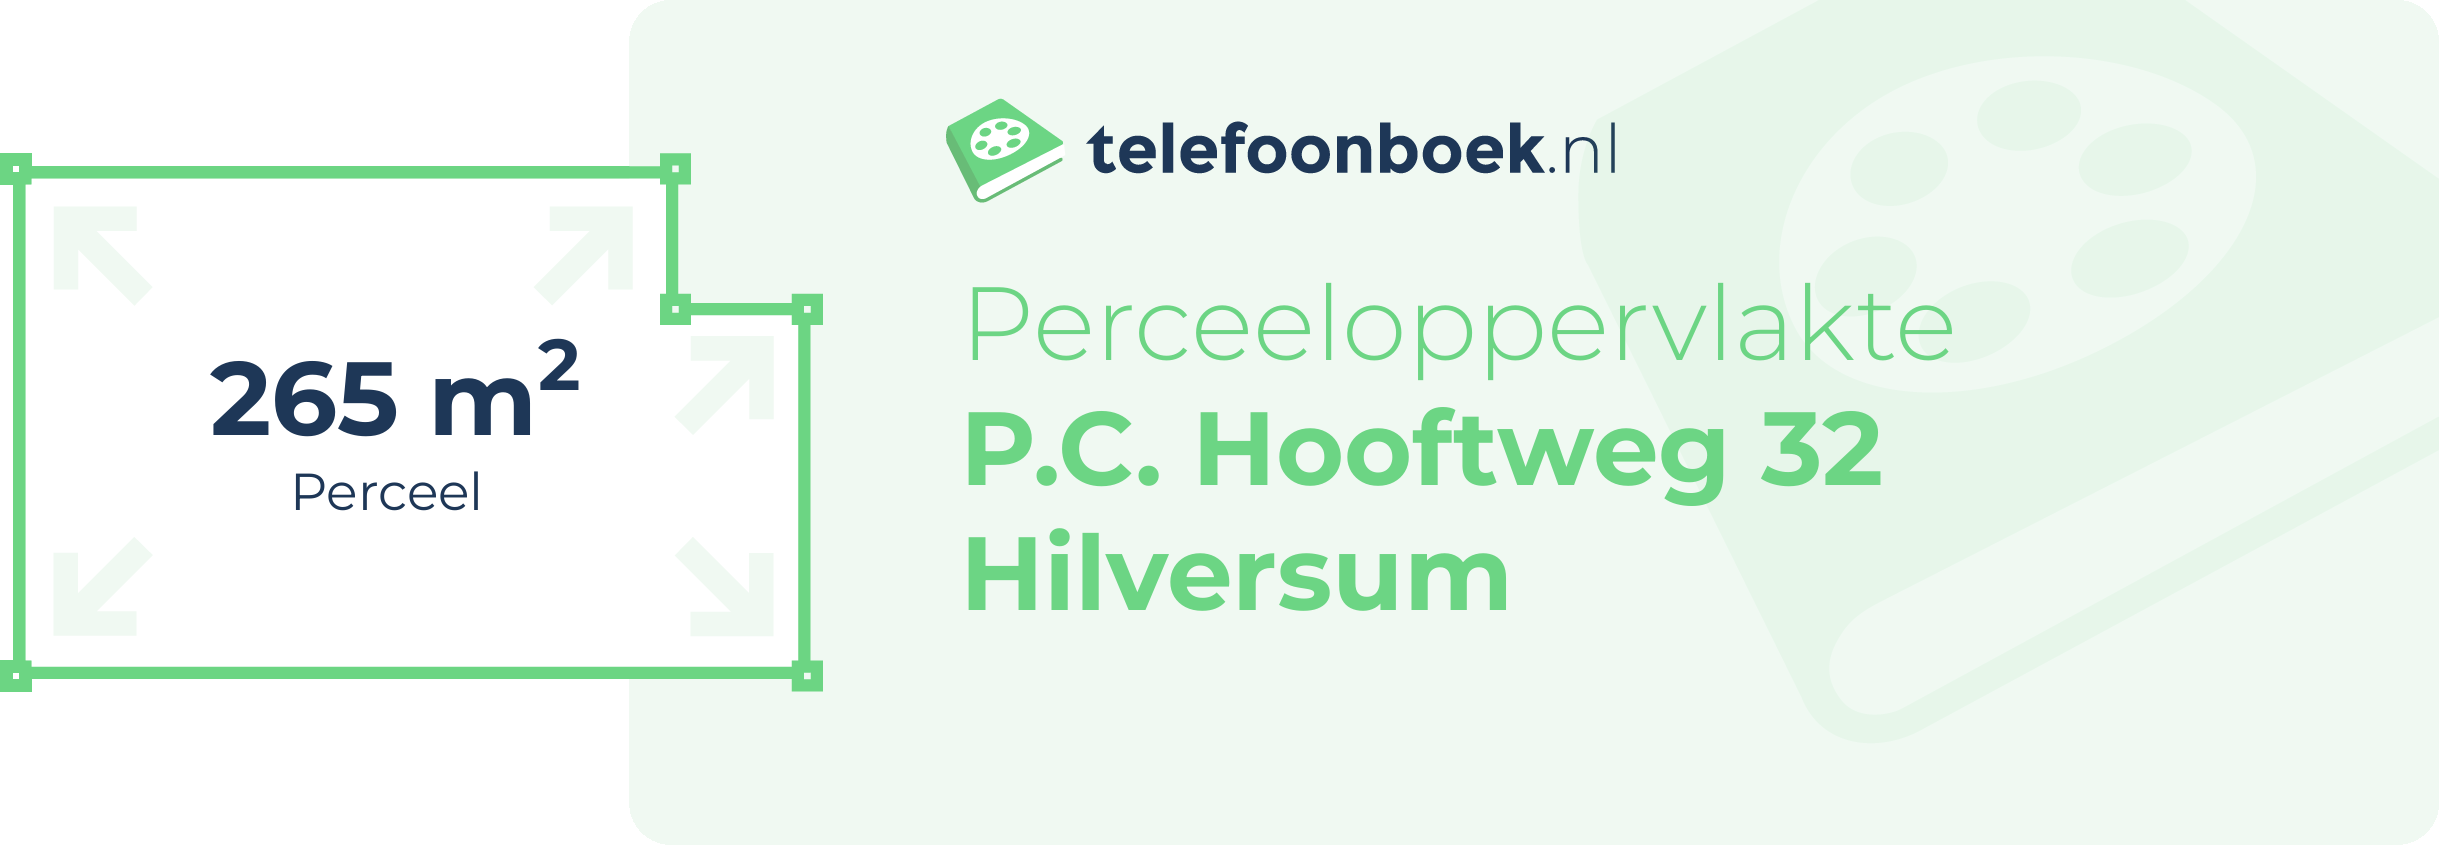 Perceeloppervlakte P.C. Hooftweg 32 Hilversum